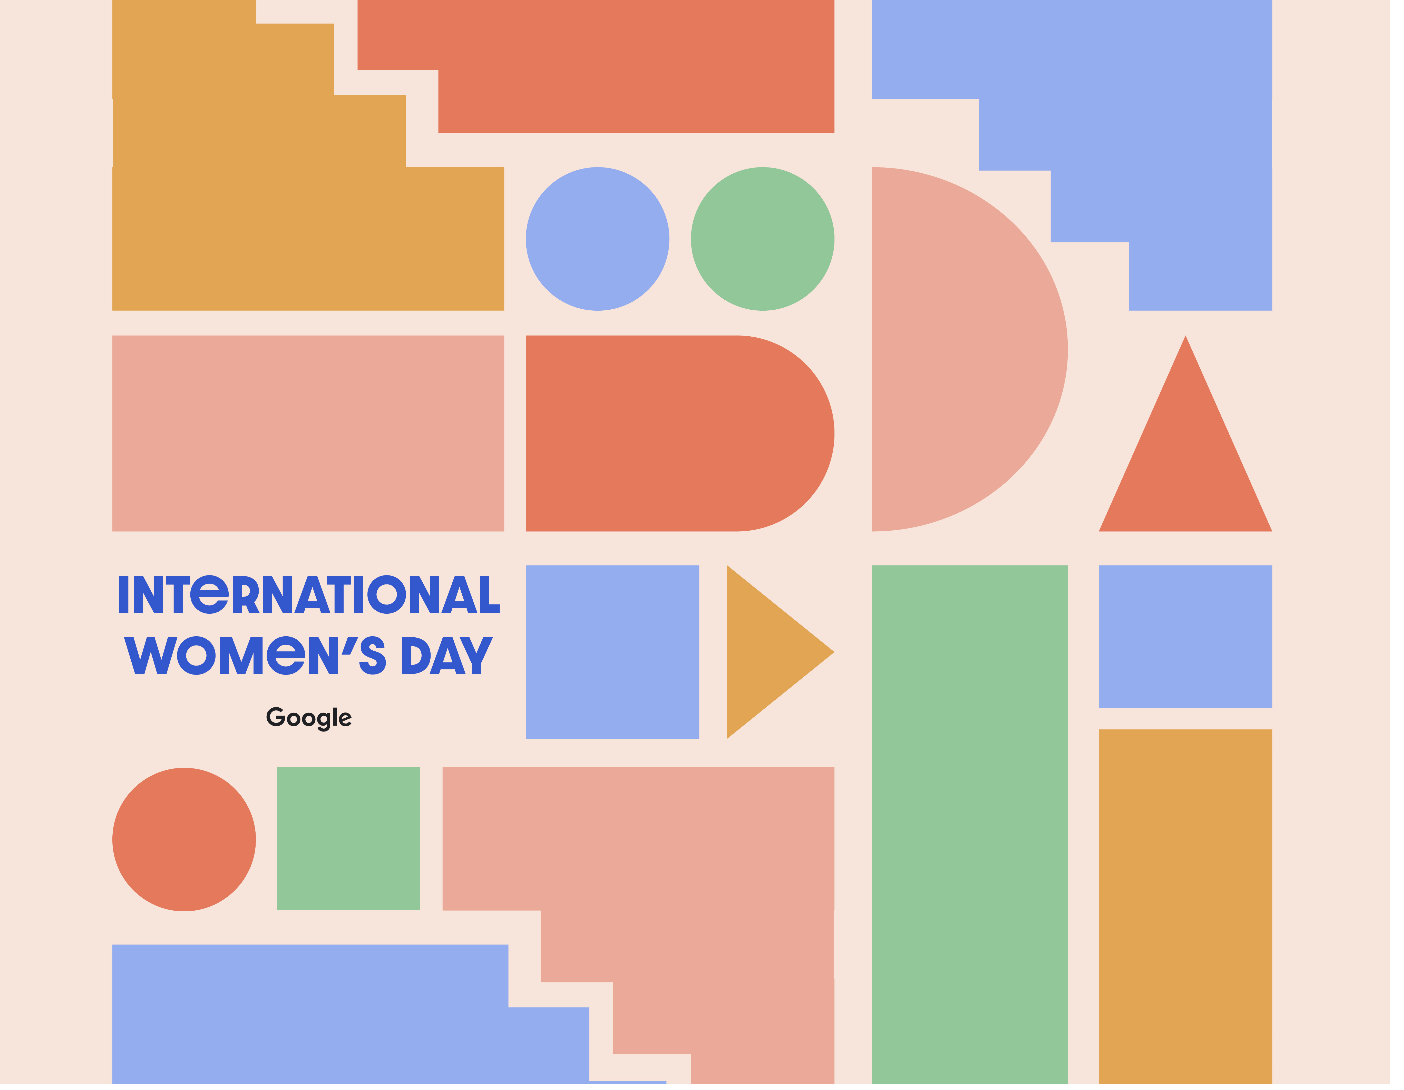 अंतरराष्ट्रीय महिला दिवस के मौके पर, रंगों से बना बैनर, जिसके चारों ओर मज़ेदार ज्यामितीय आकृतियां हैं. यह विविधता और बिना किसी भेदभाव के सभी को शामिल करने के जश्न को दिखाता है.